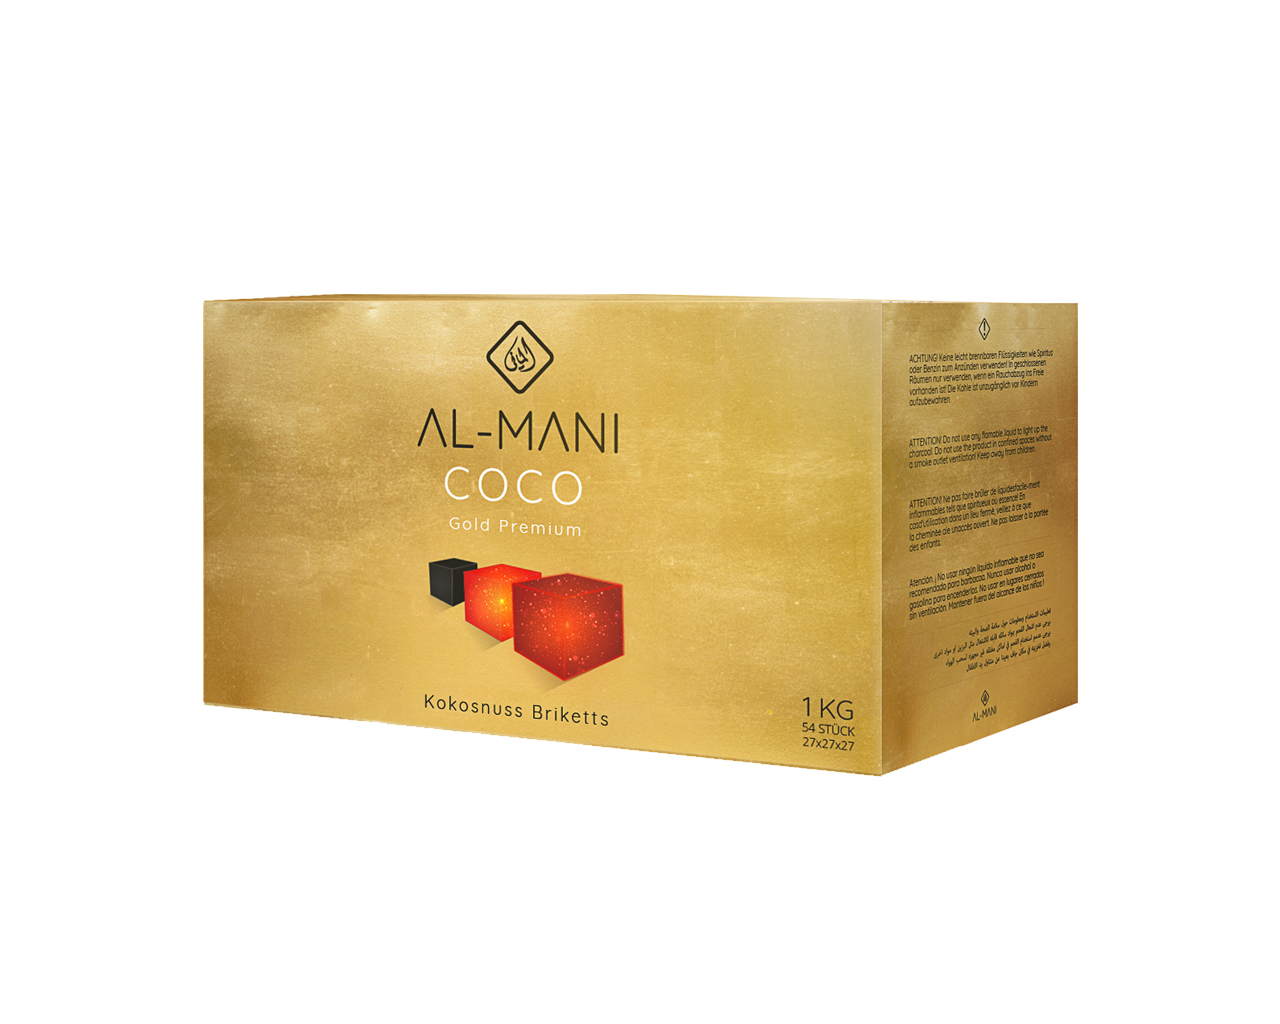 Al-Mani Coco Gold Premium - 1Kg - 27 mm